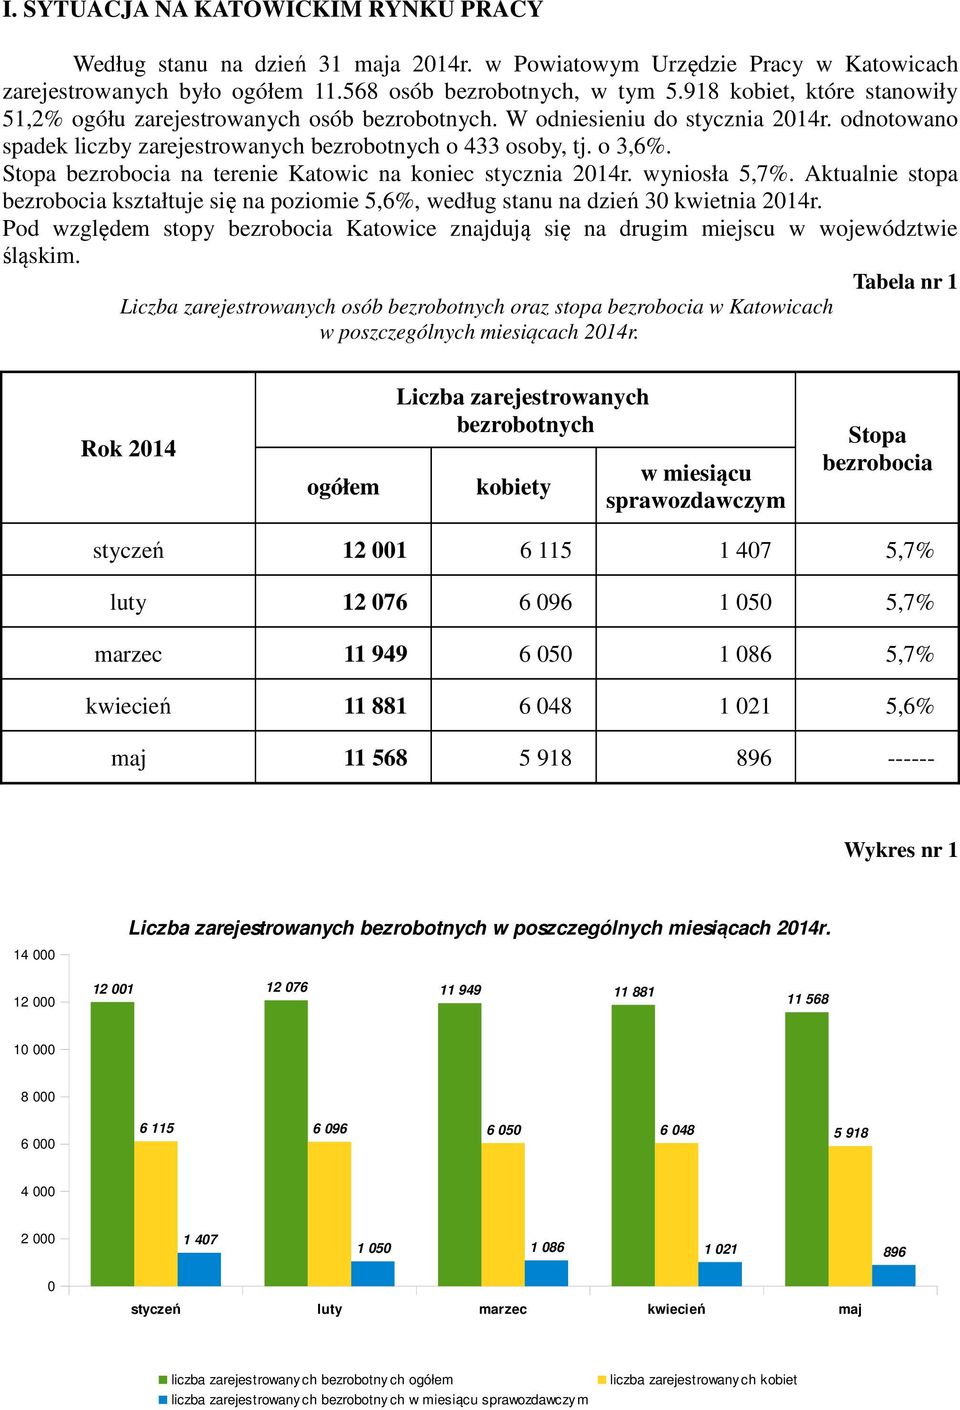 Stopa bezrobocia na terenie Katowic na koniec stycznia 2014r. wyniosła 5,7%. Aktualnie stopa bezrobocia kształtuje się na poziomie 5,6%, według stanu na dzień 30 kwietnia 2014r.